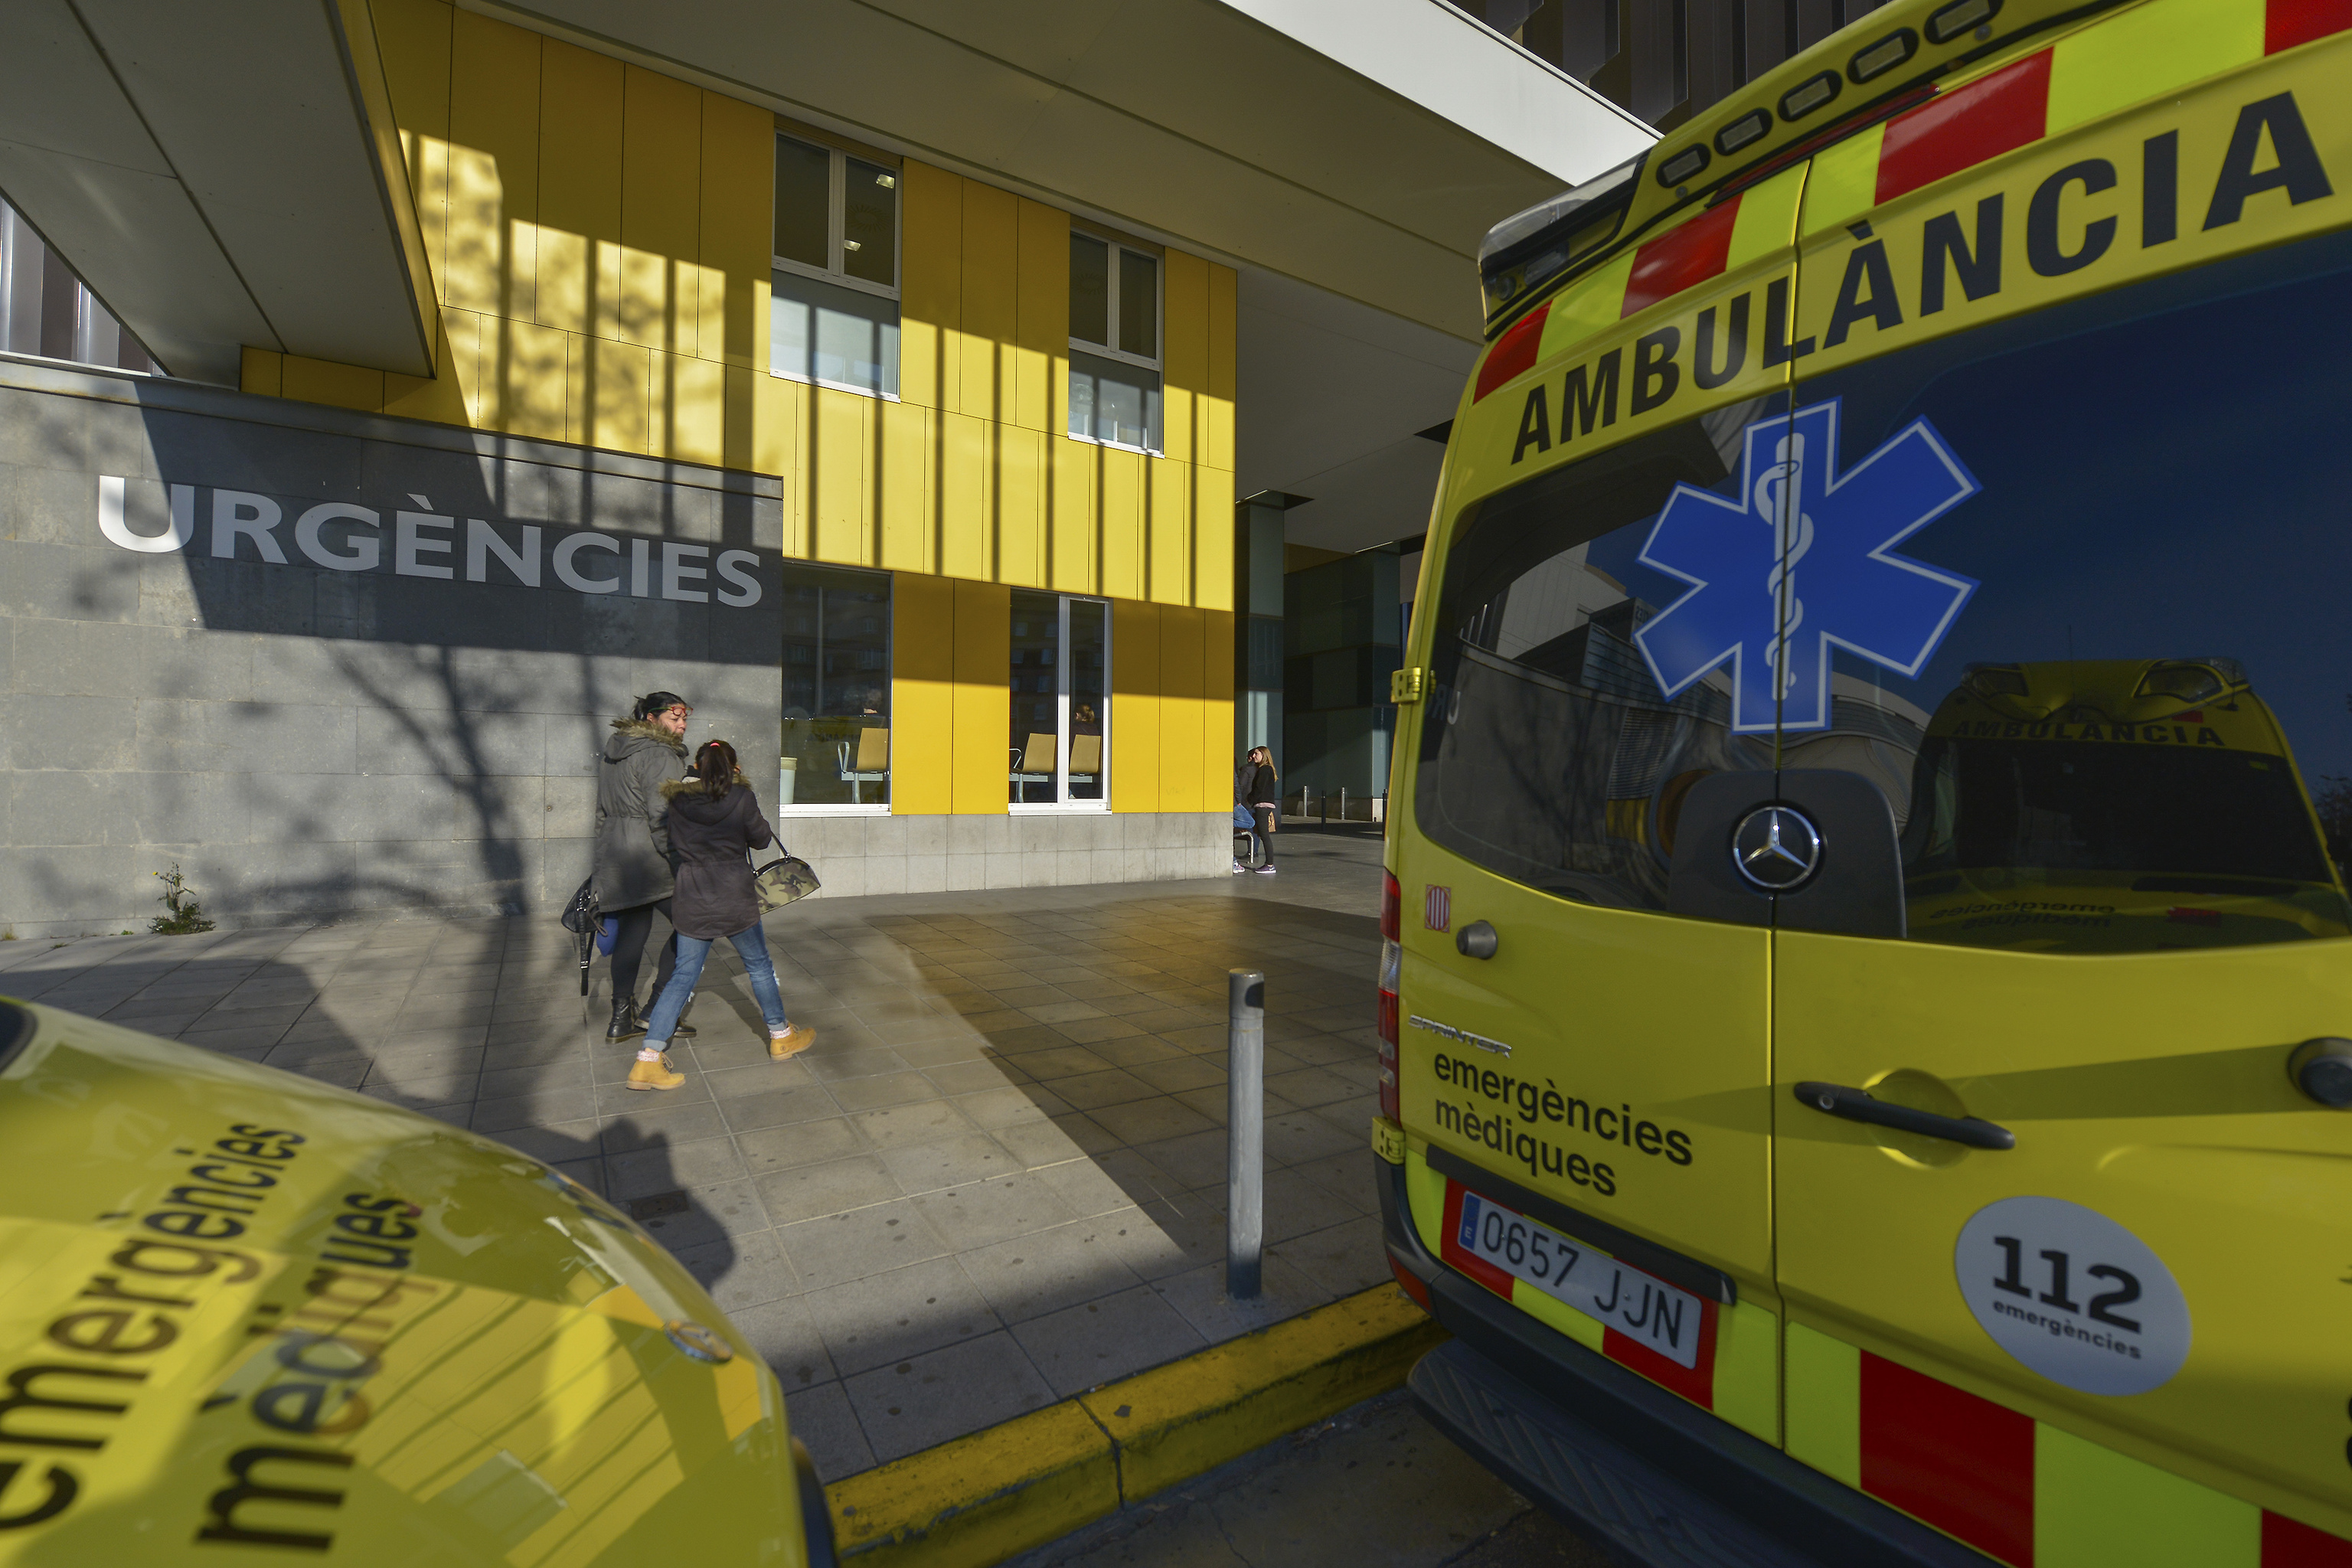 Ambulancias en una imagen de archivo.